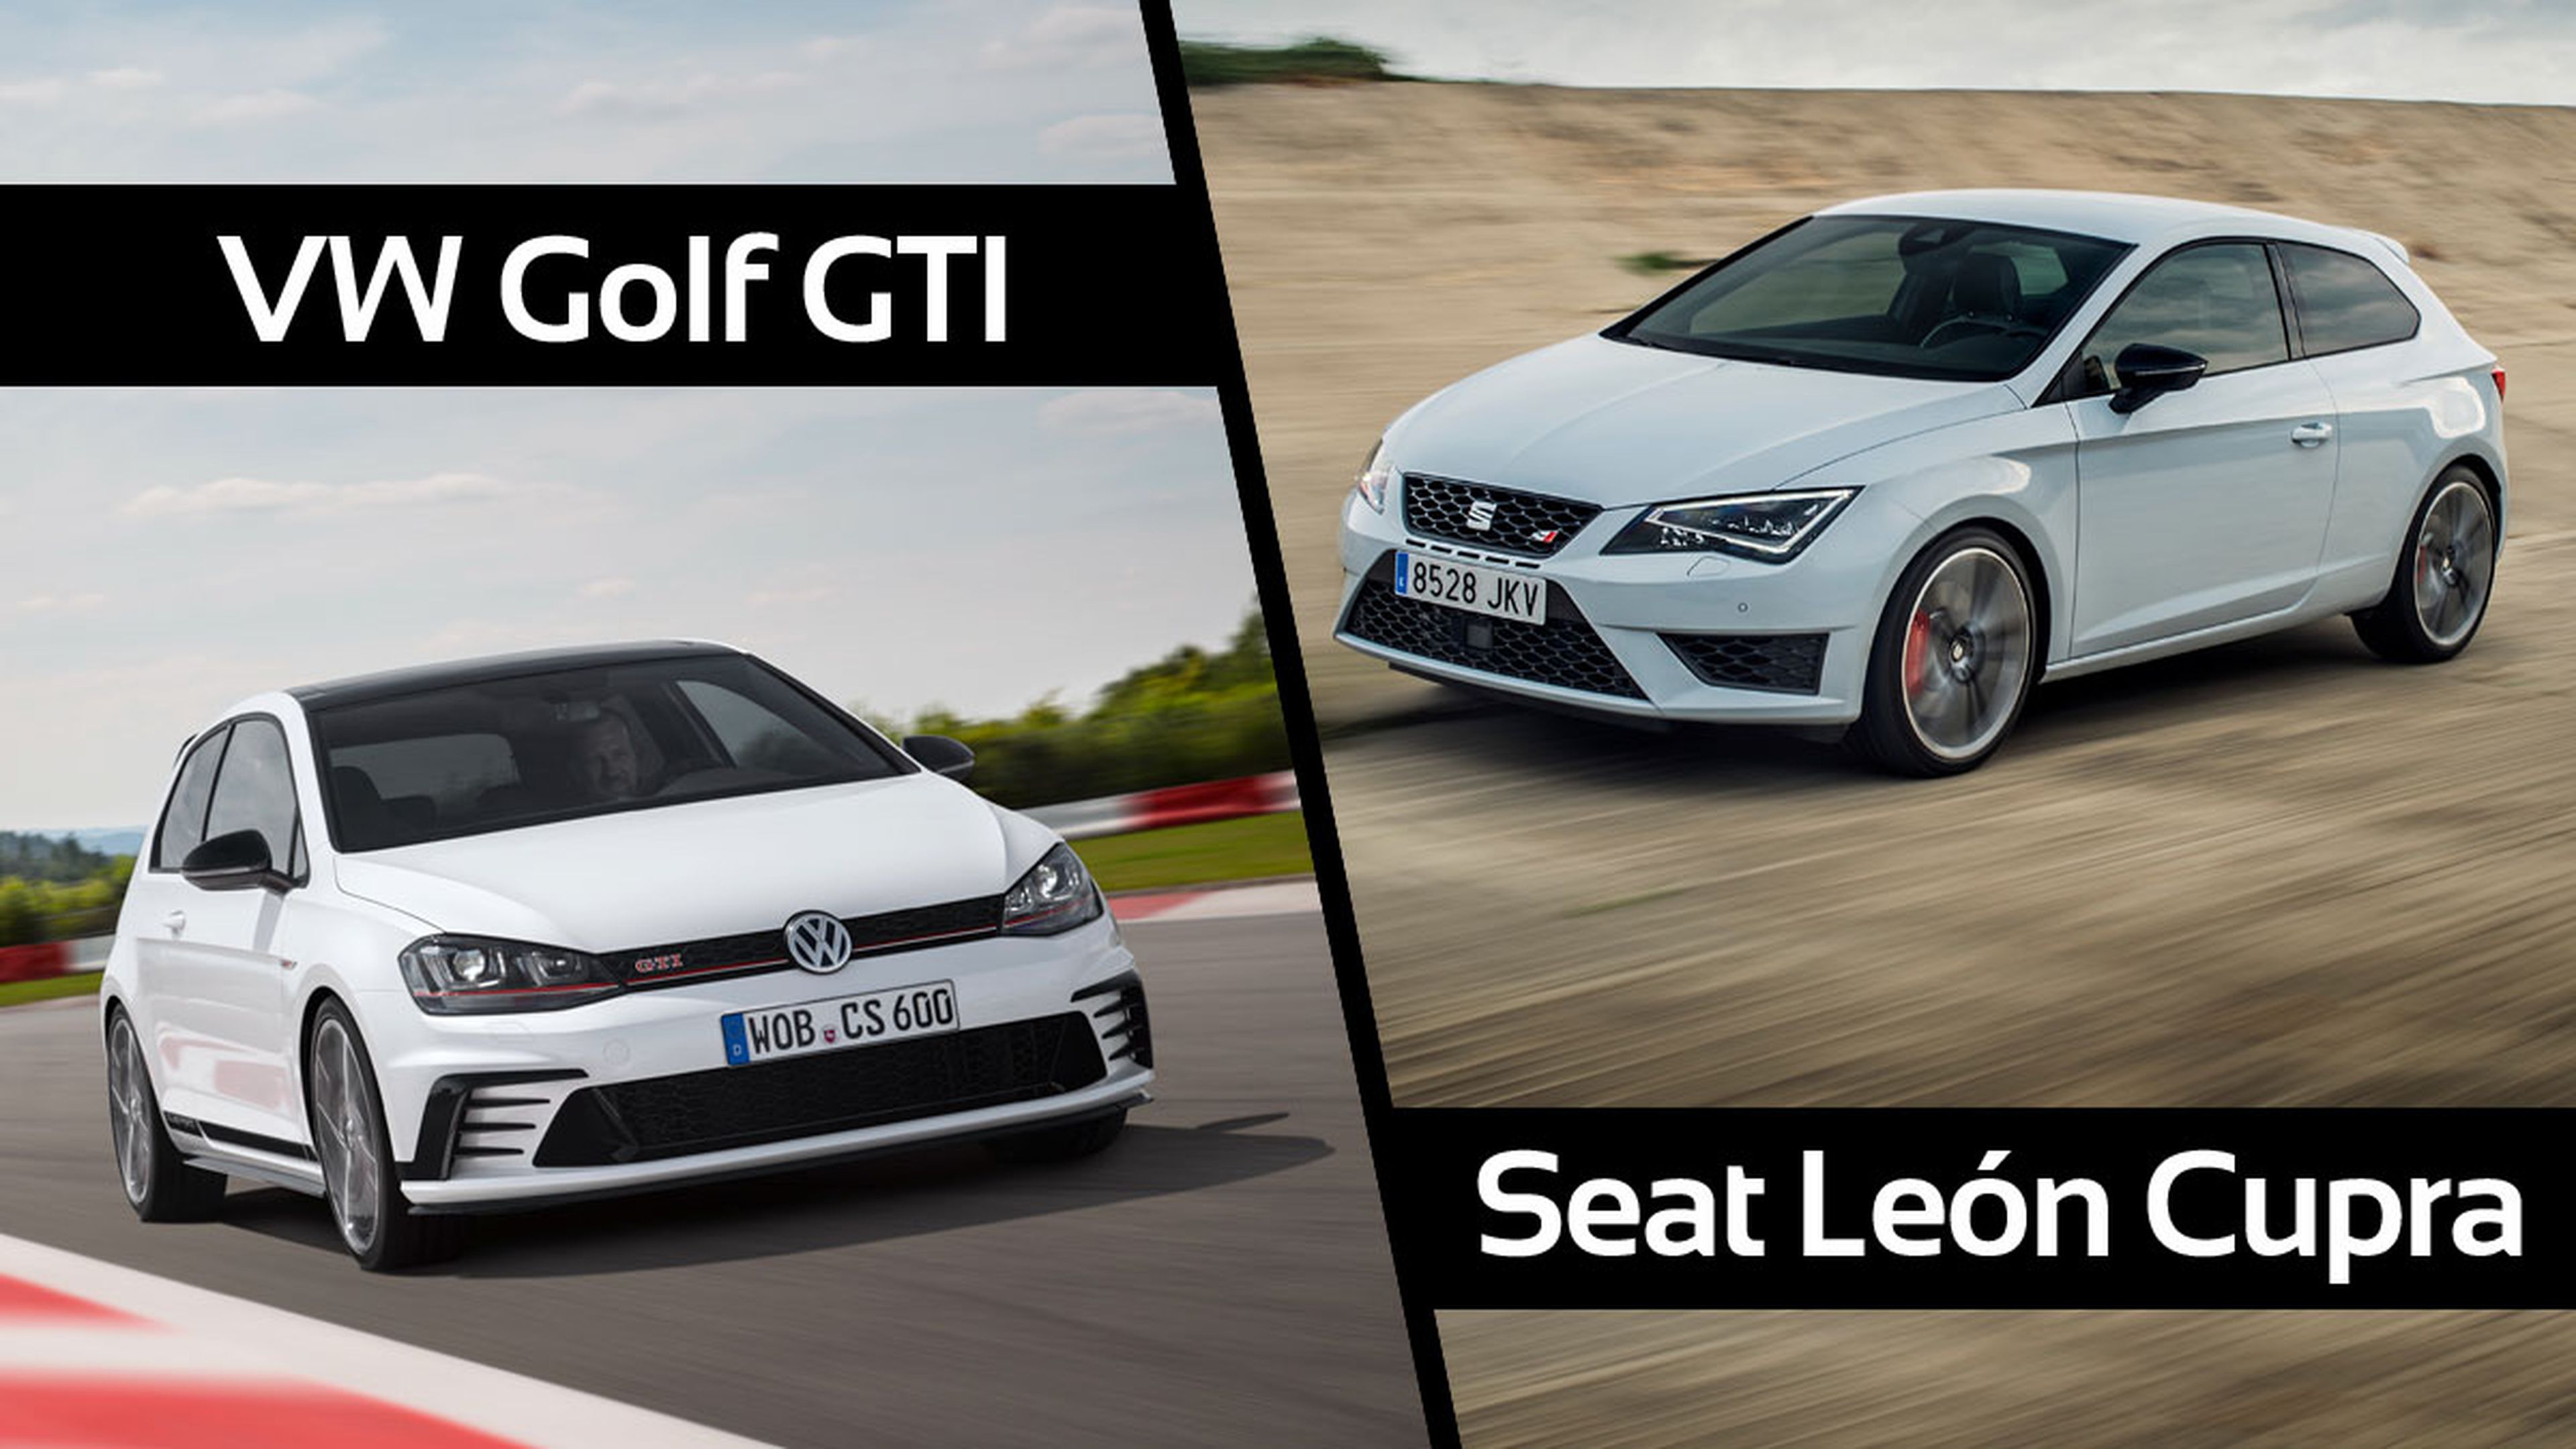 ¿Cuál es mejor, Seat León Cupra 290 o VW Golf GTI?